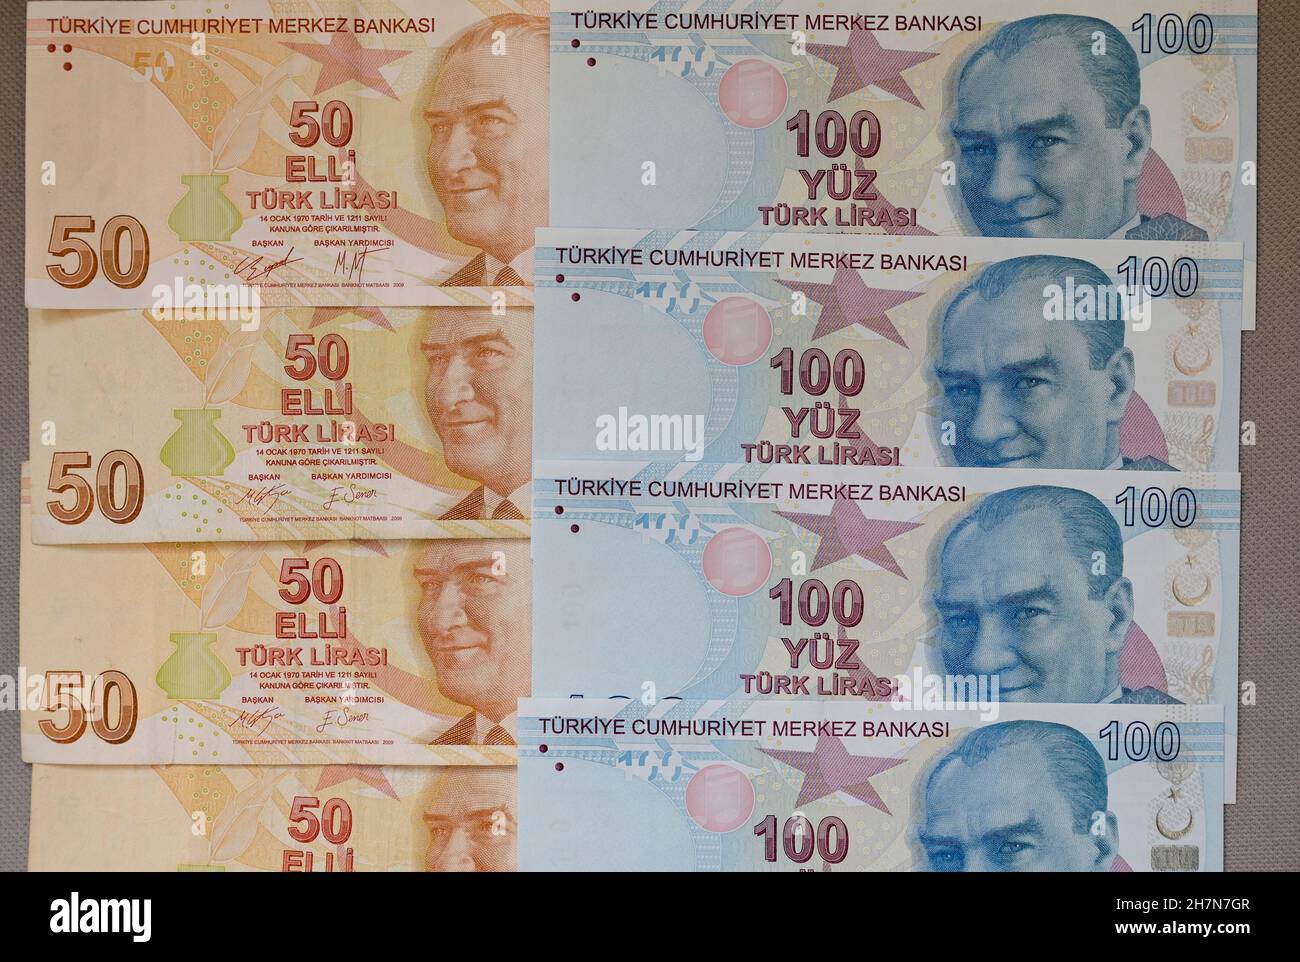 TURQUÍA, Estambul, Billetes turkish Lira / Türkei, Estambul, 50er und 100er Banknoten türkische Lira mit Bild von Mustafa Kemal Atatürk Foto de stock